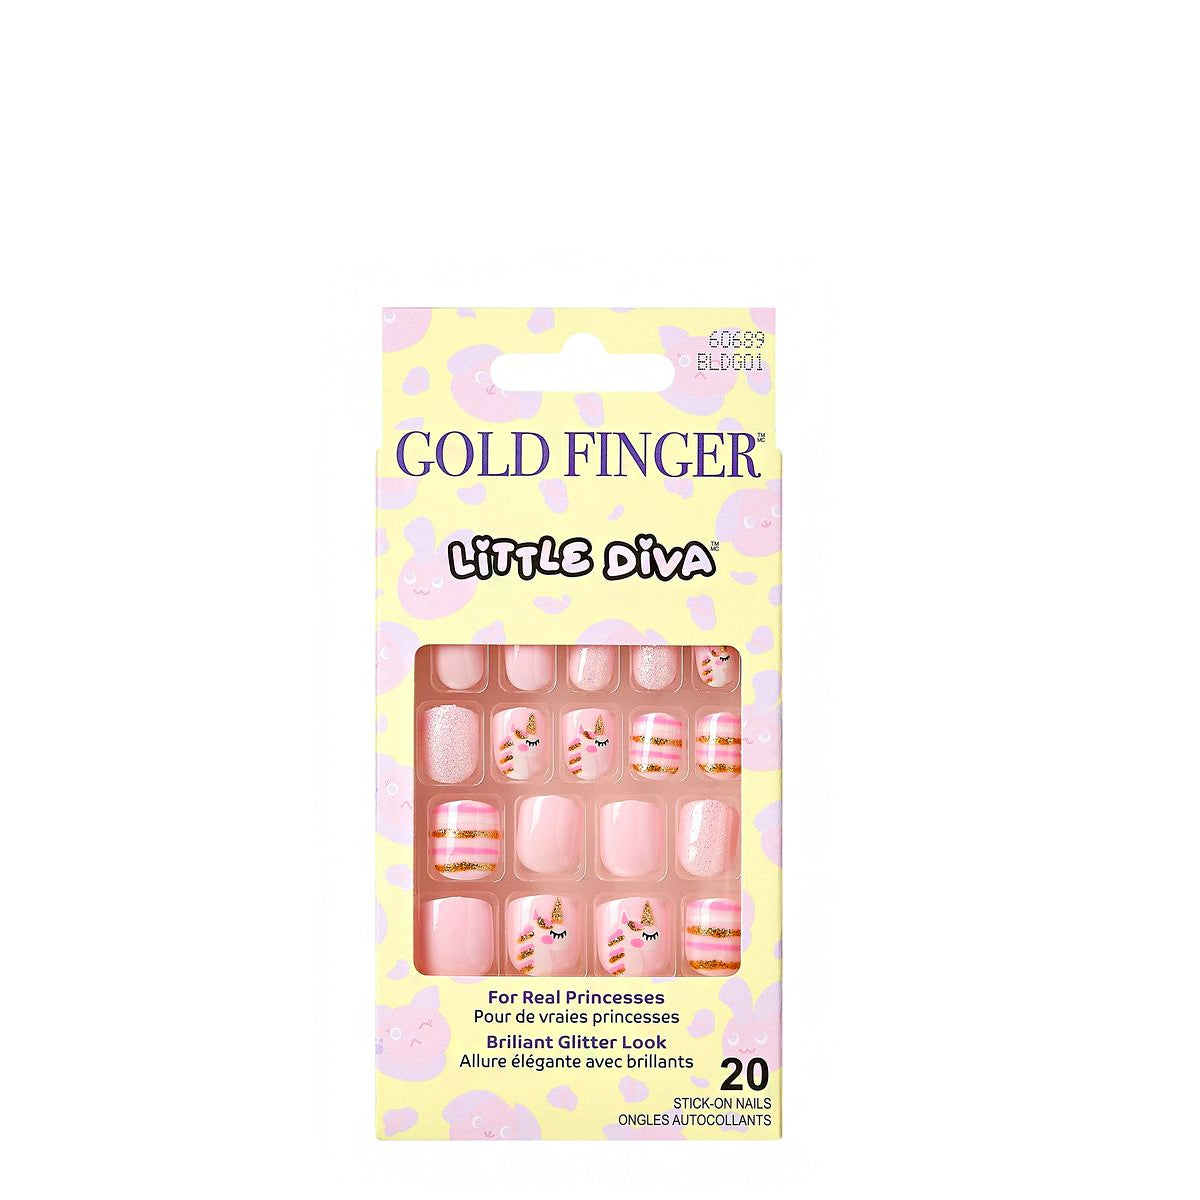 IVY Gold Finger Little Diva 20 Stick-On Nails BLDGXX